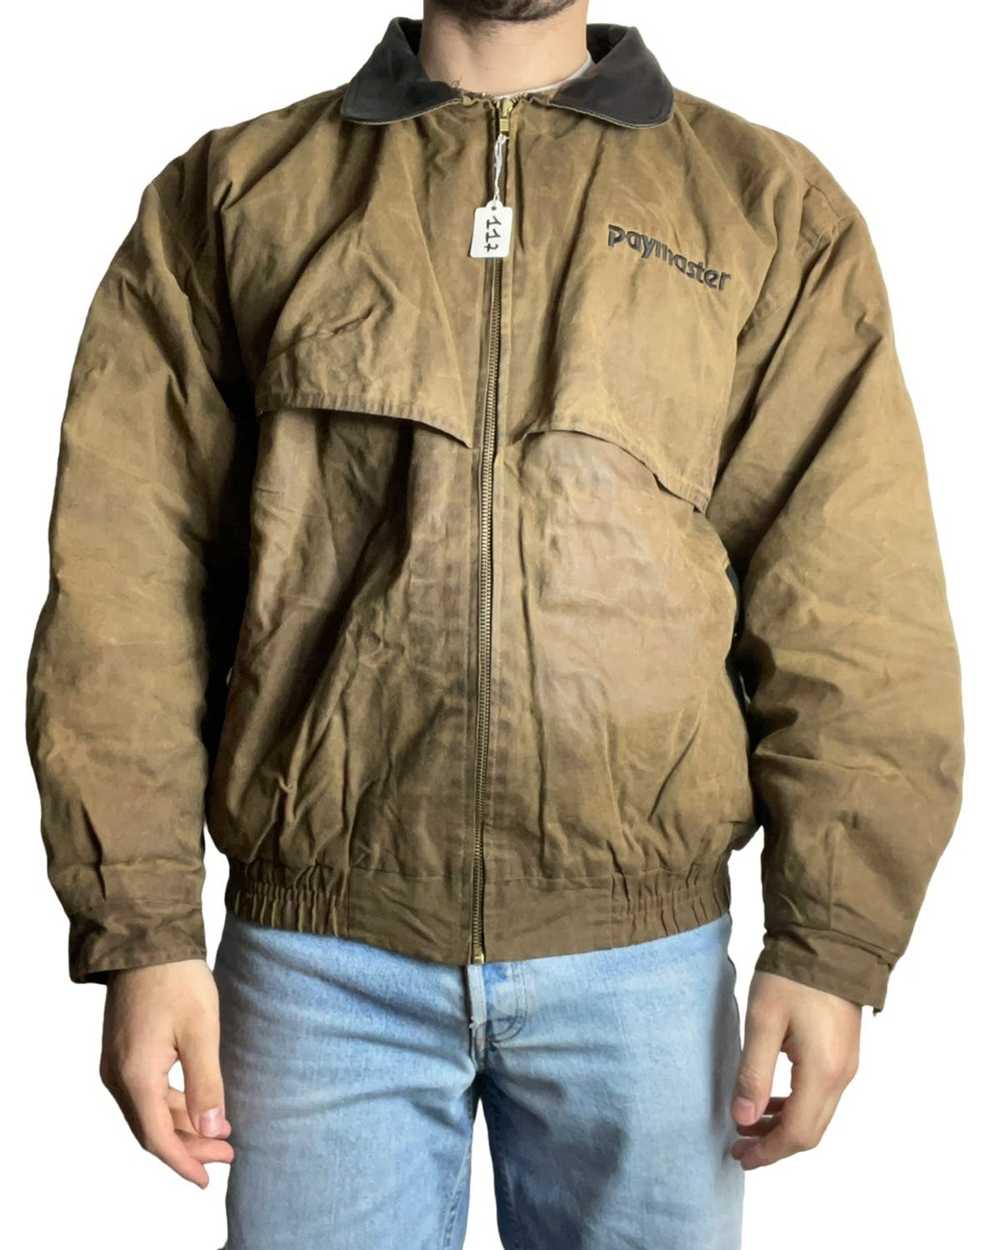 Vintage Worker vintage jacket - image 3